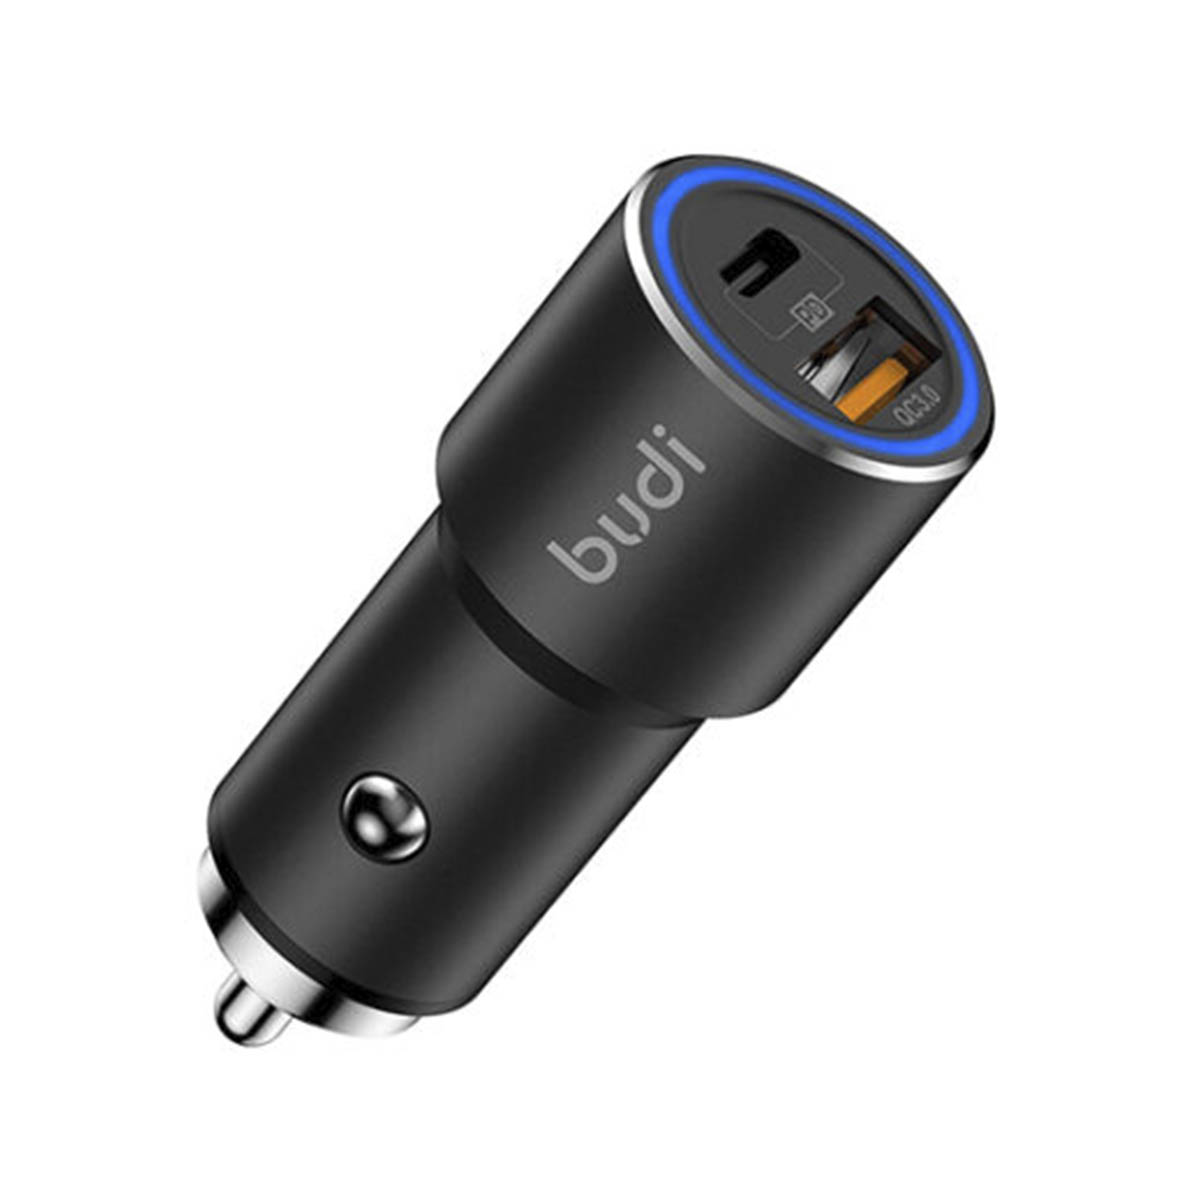 АЗУ (Автомобильное зарядное устройство) BUDI, 38W, 1 USB, USB Type C, цвет черный